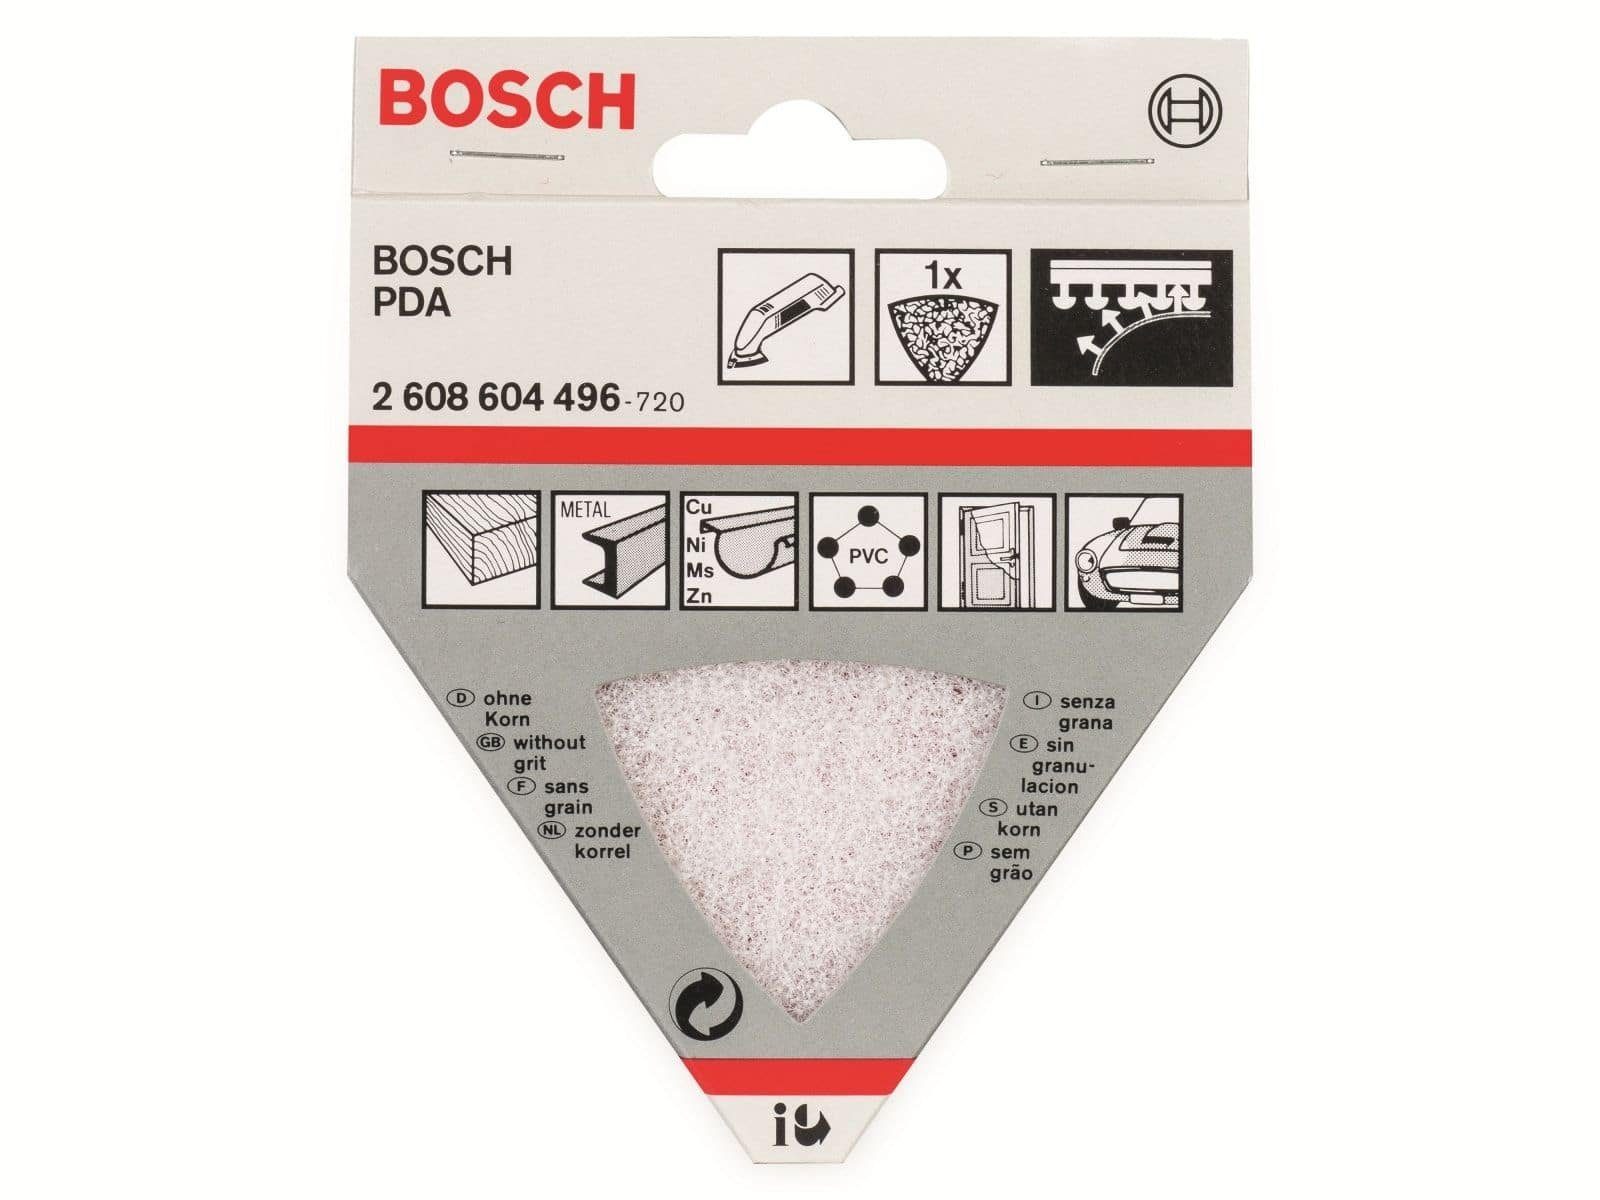 Accessories BOSCH BOSCH Allesschneider Reinigungsvlies Dreieckschleifer Bosch für